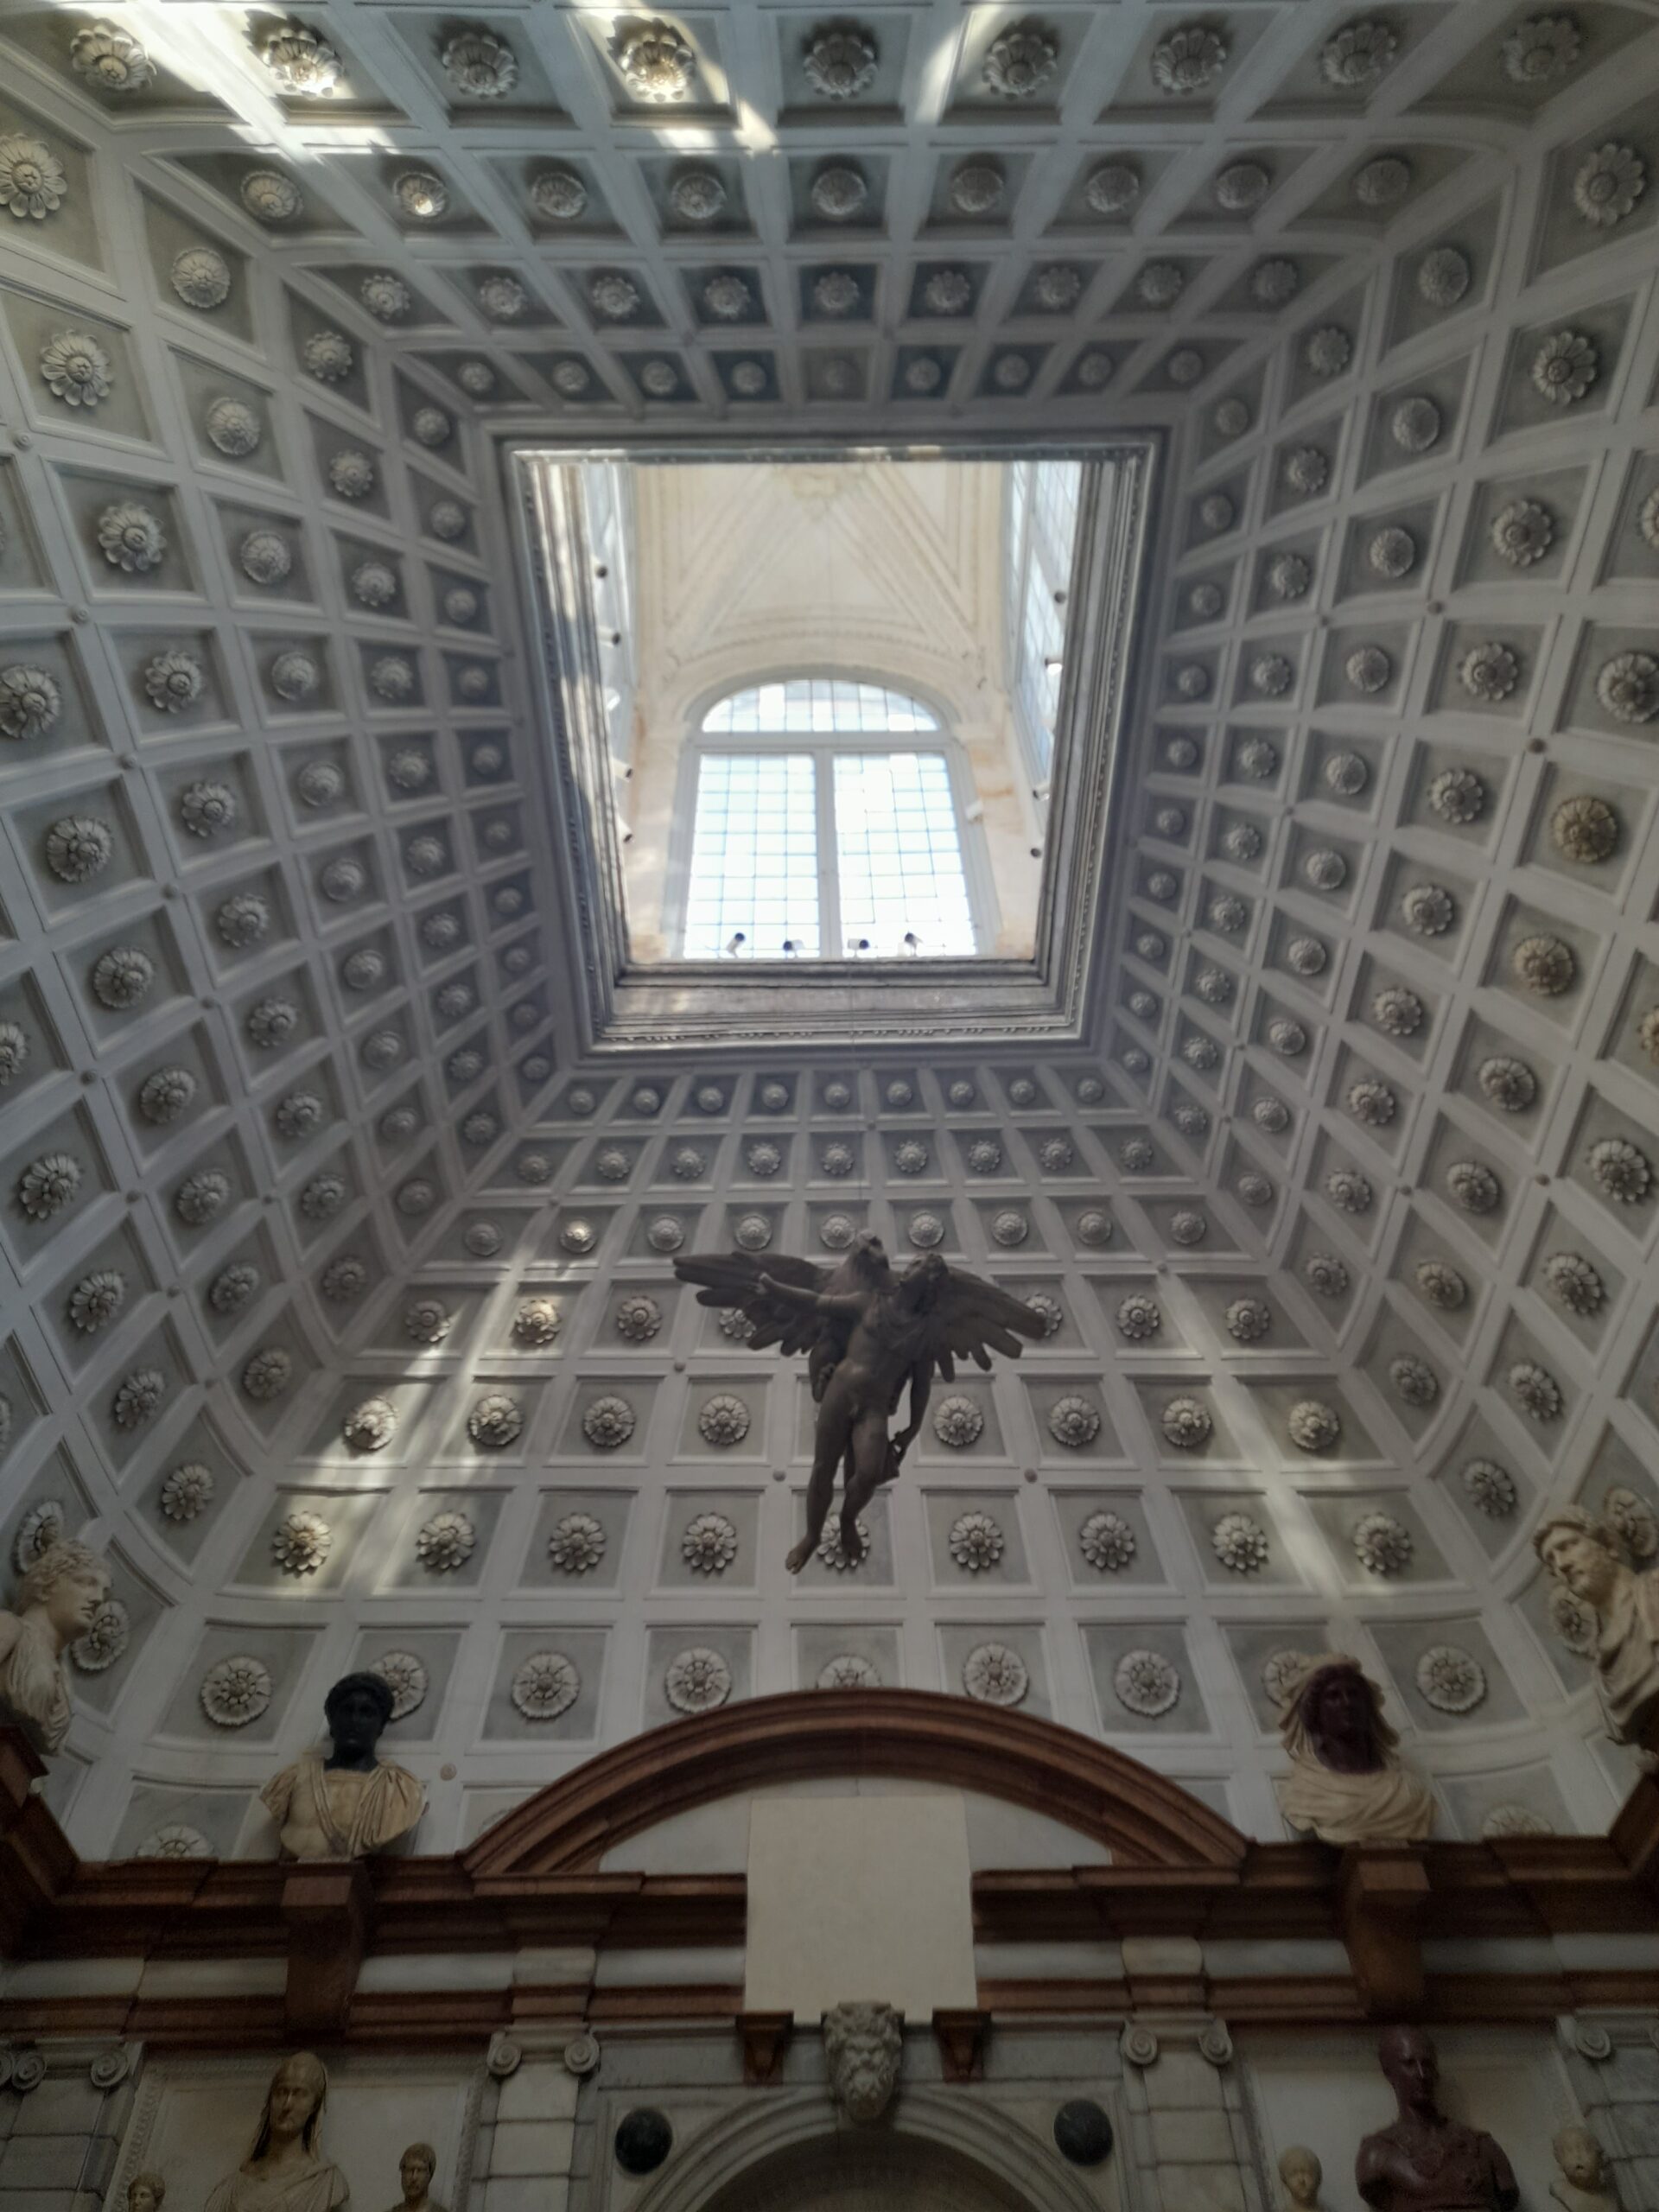 Palazzo Grimani Venezia